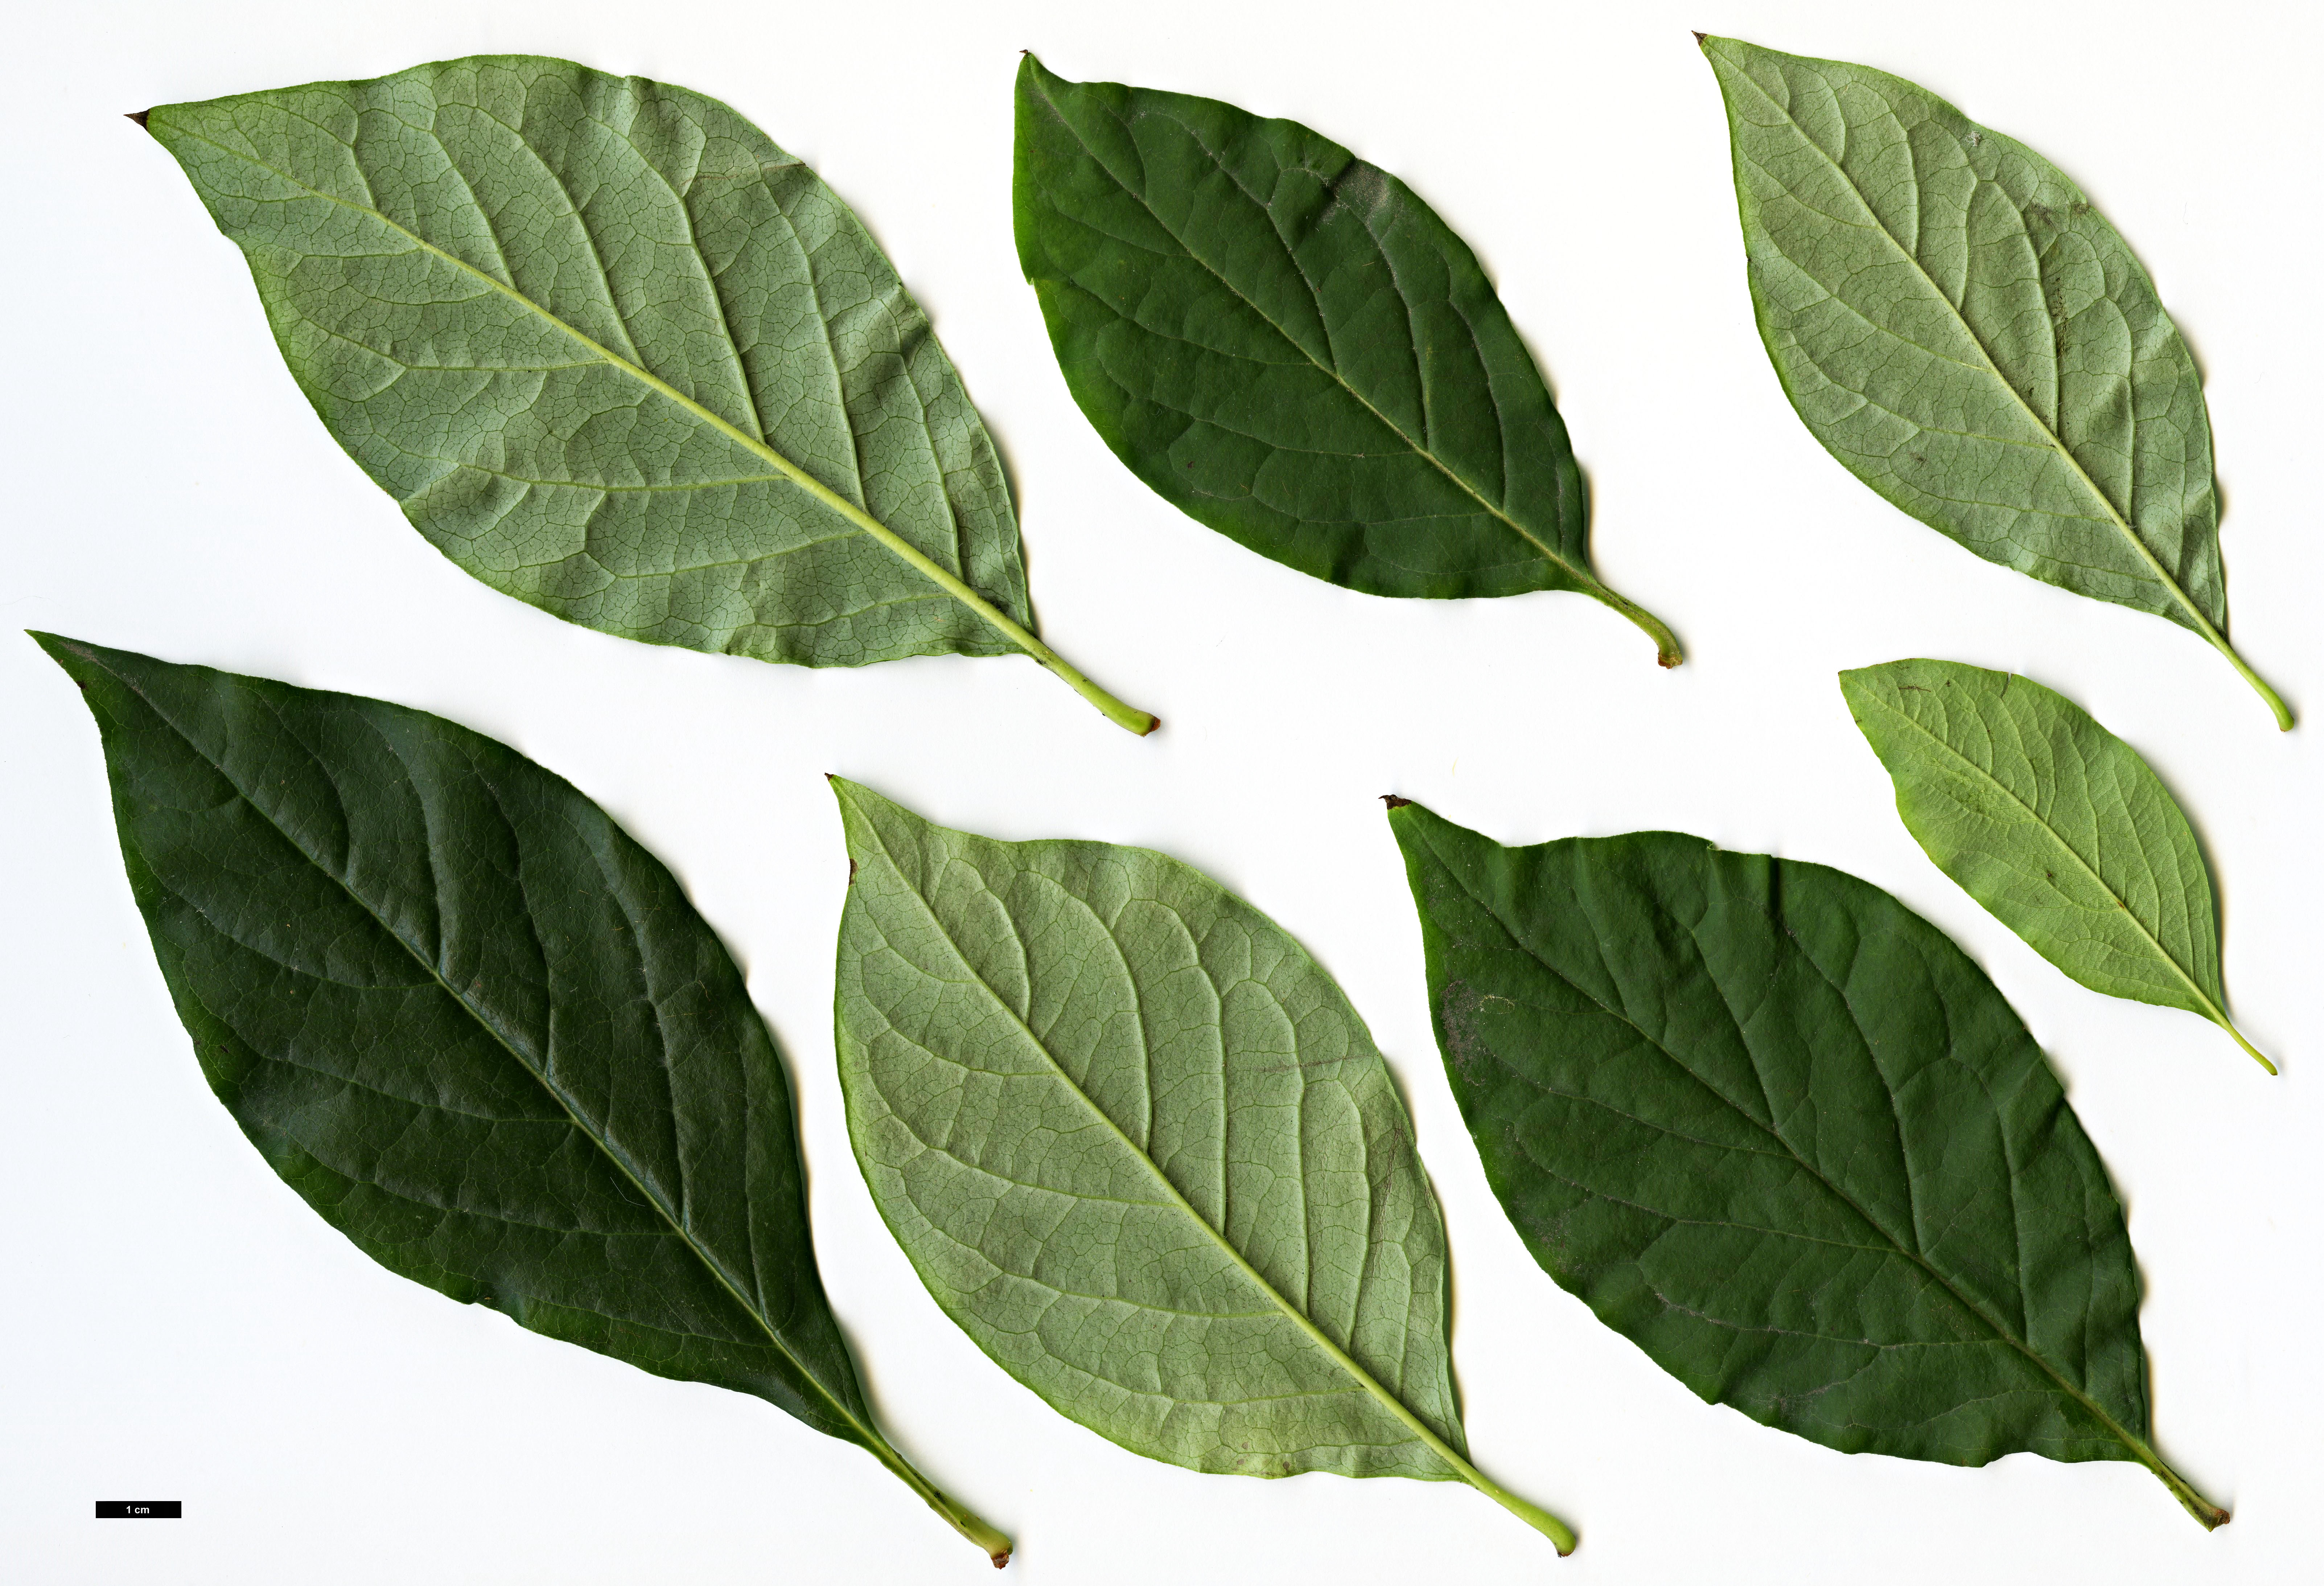 High resolution image: Family: Oleaceae - Genus: Syringa - Taxon: villosa